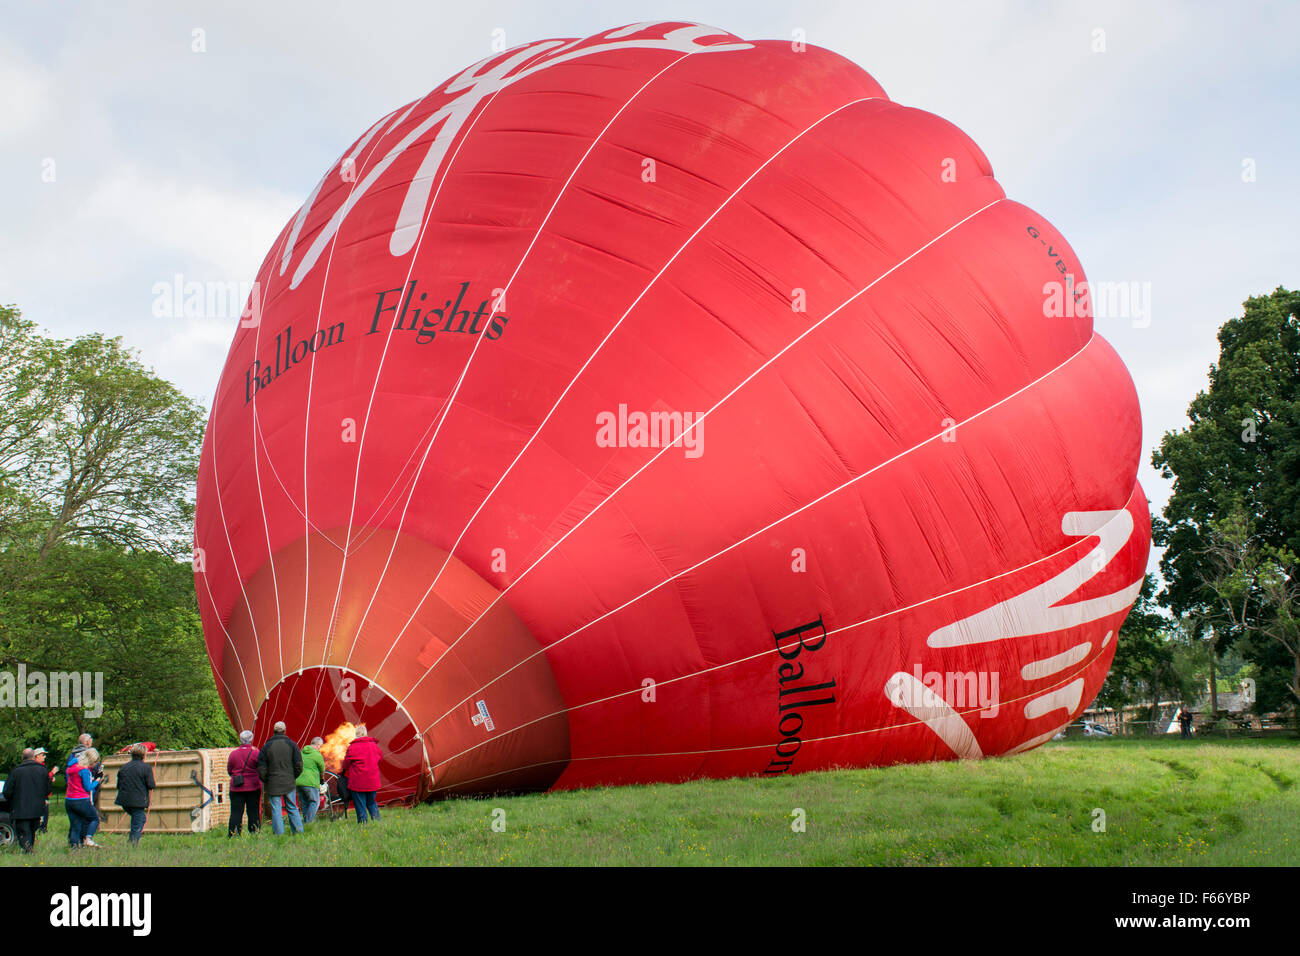 Inflating a Virgin hot air balloon. Cumbria, UK Stock Photo